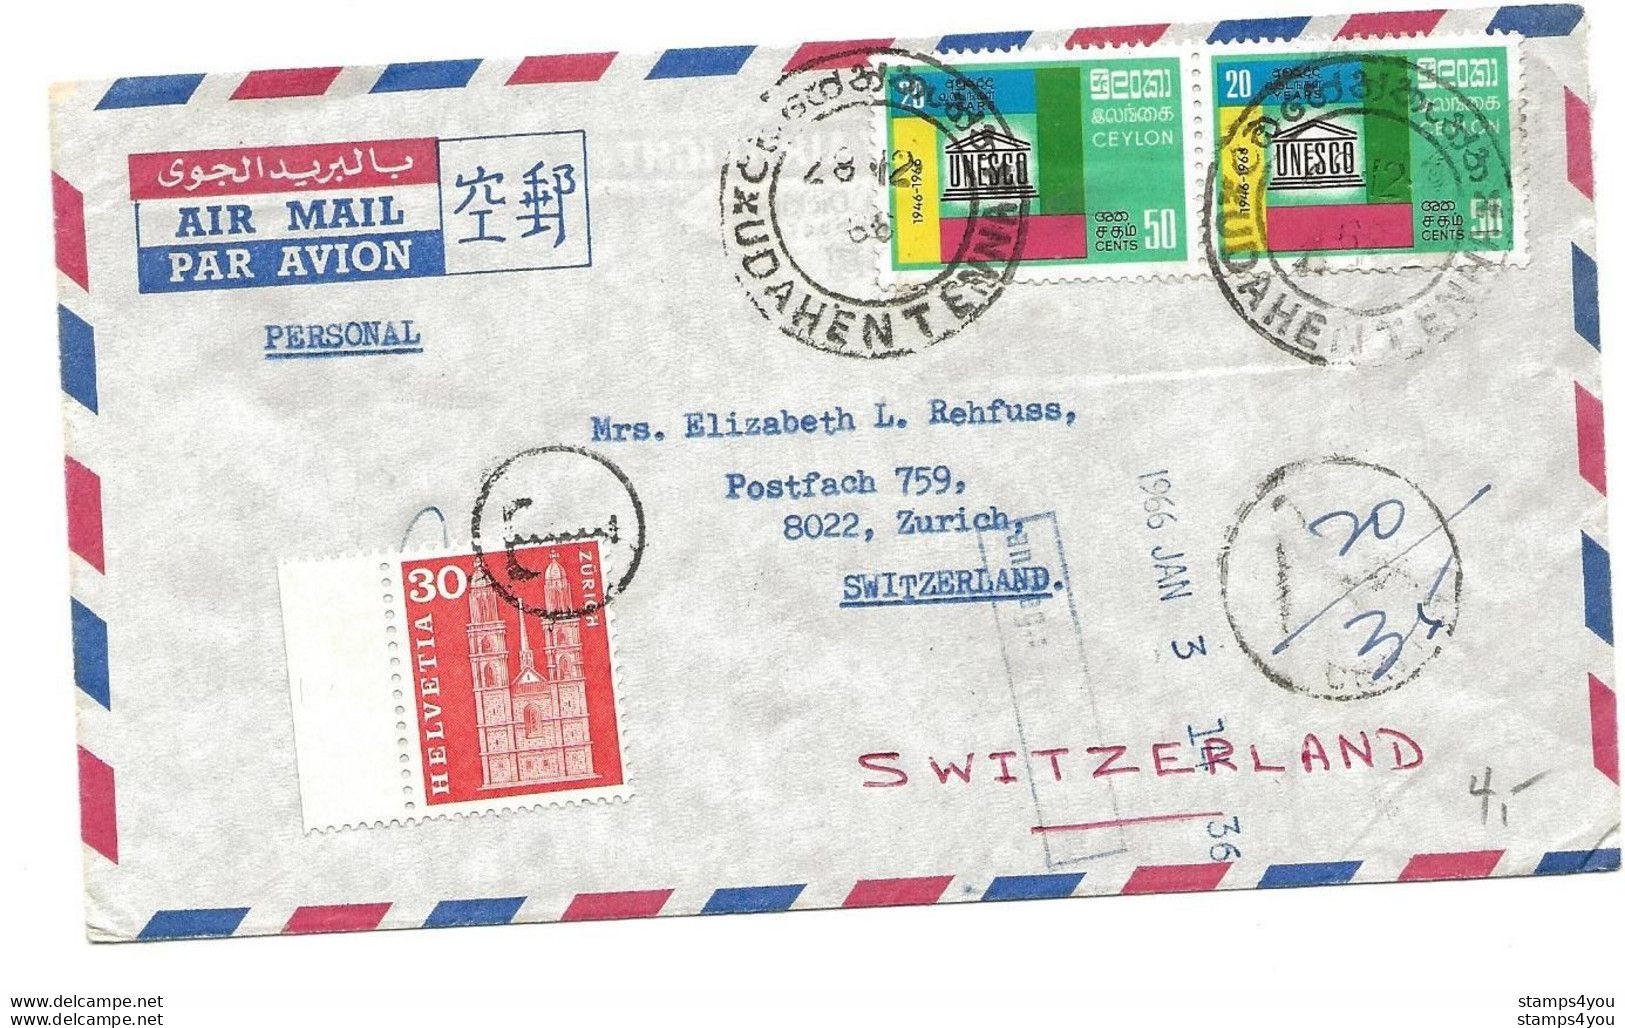 104 - 69 - Enveloppe Envoyée De Ceylon En Suisse - Timbre Suisse Avec Cachet "T" Taxe 1966 - Taxe